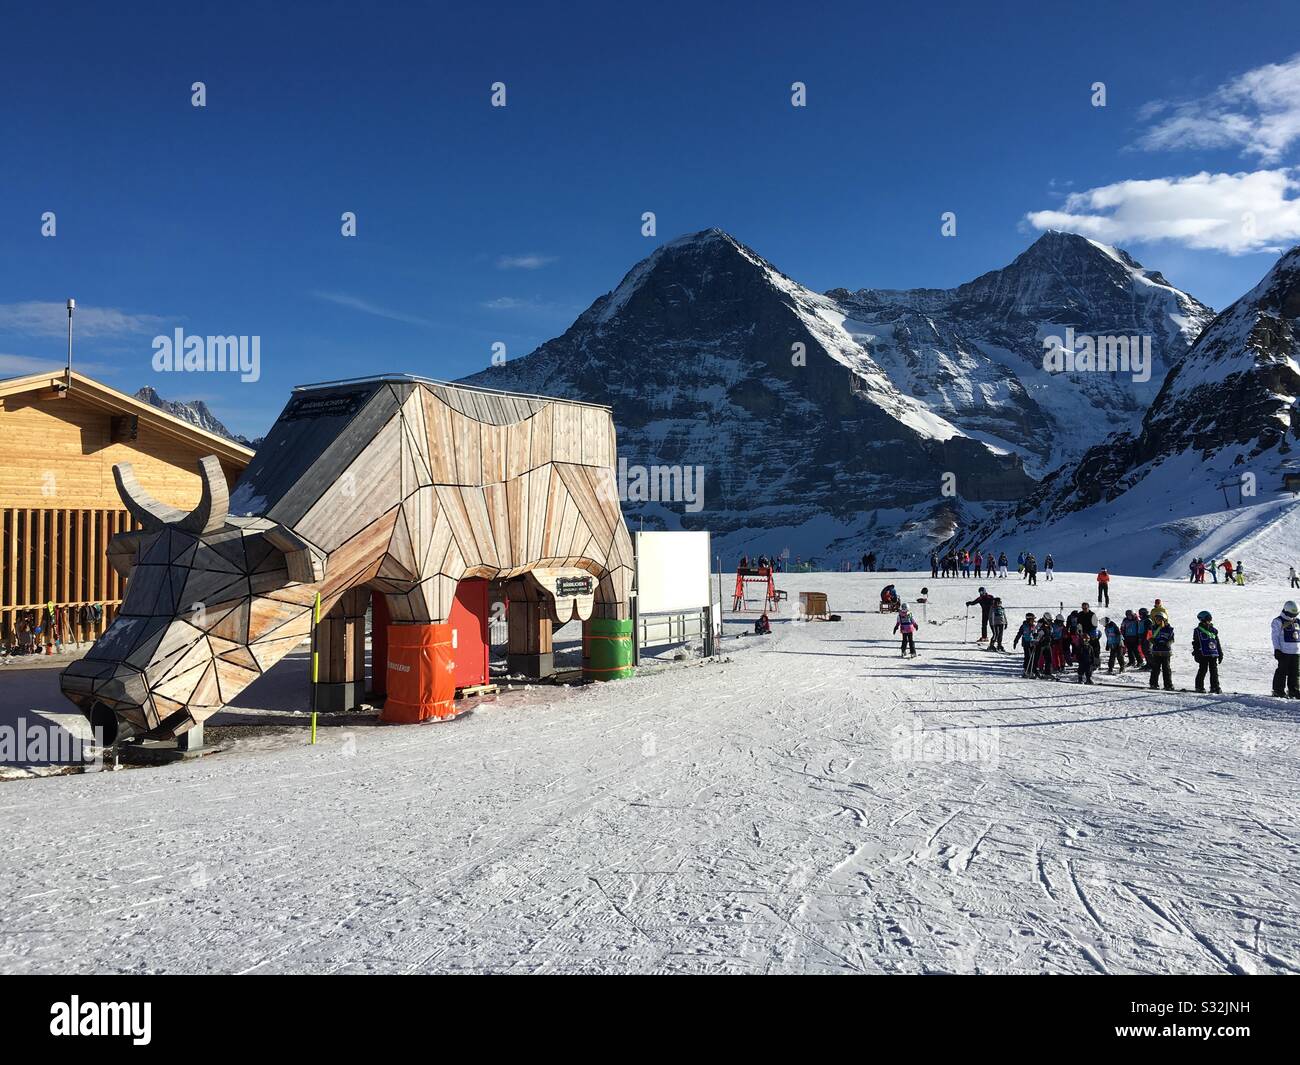 Skiarea Männlichen with wooden cow, in back mtns. Eiger (l) and Mönch, Grindelwald, Switzerland. Stock Photo